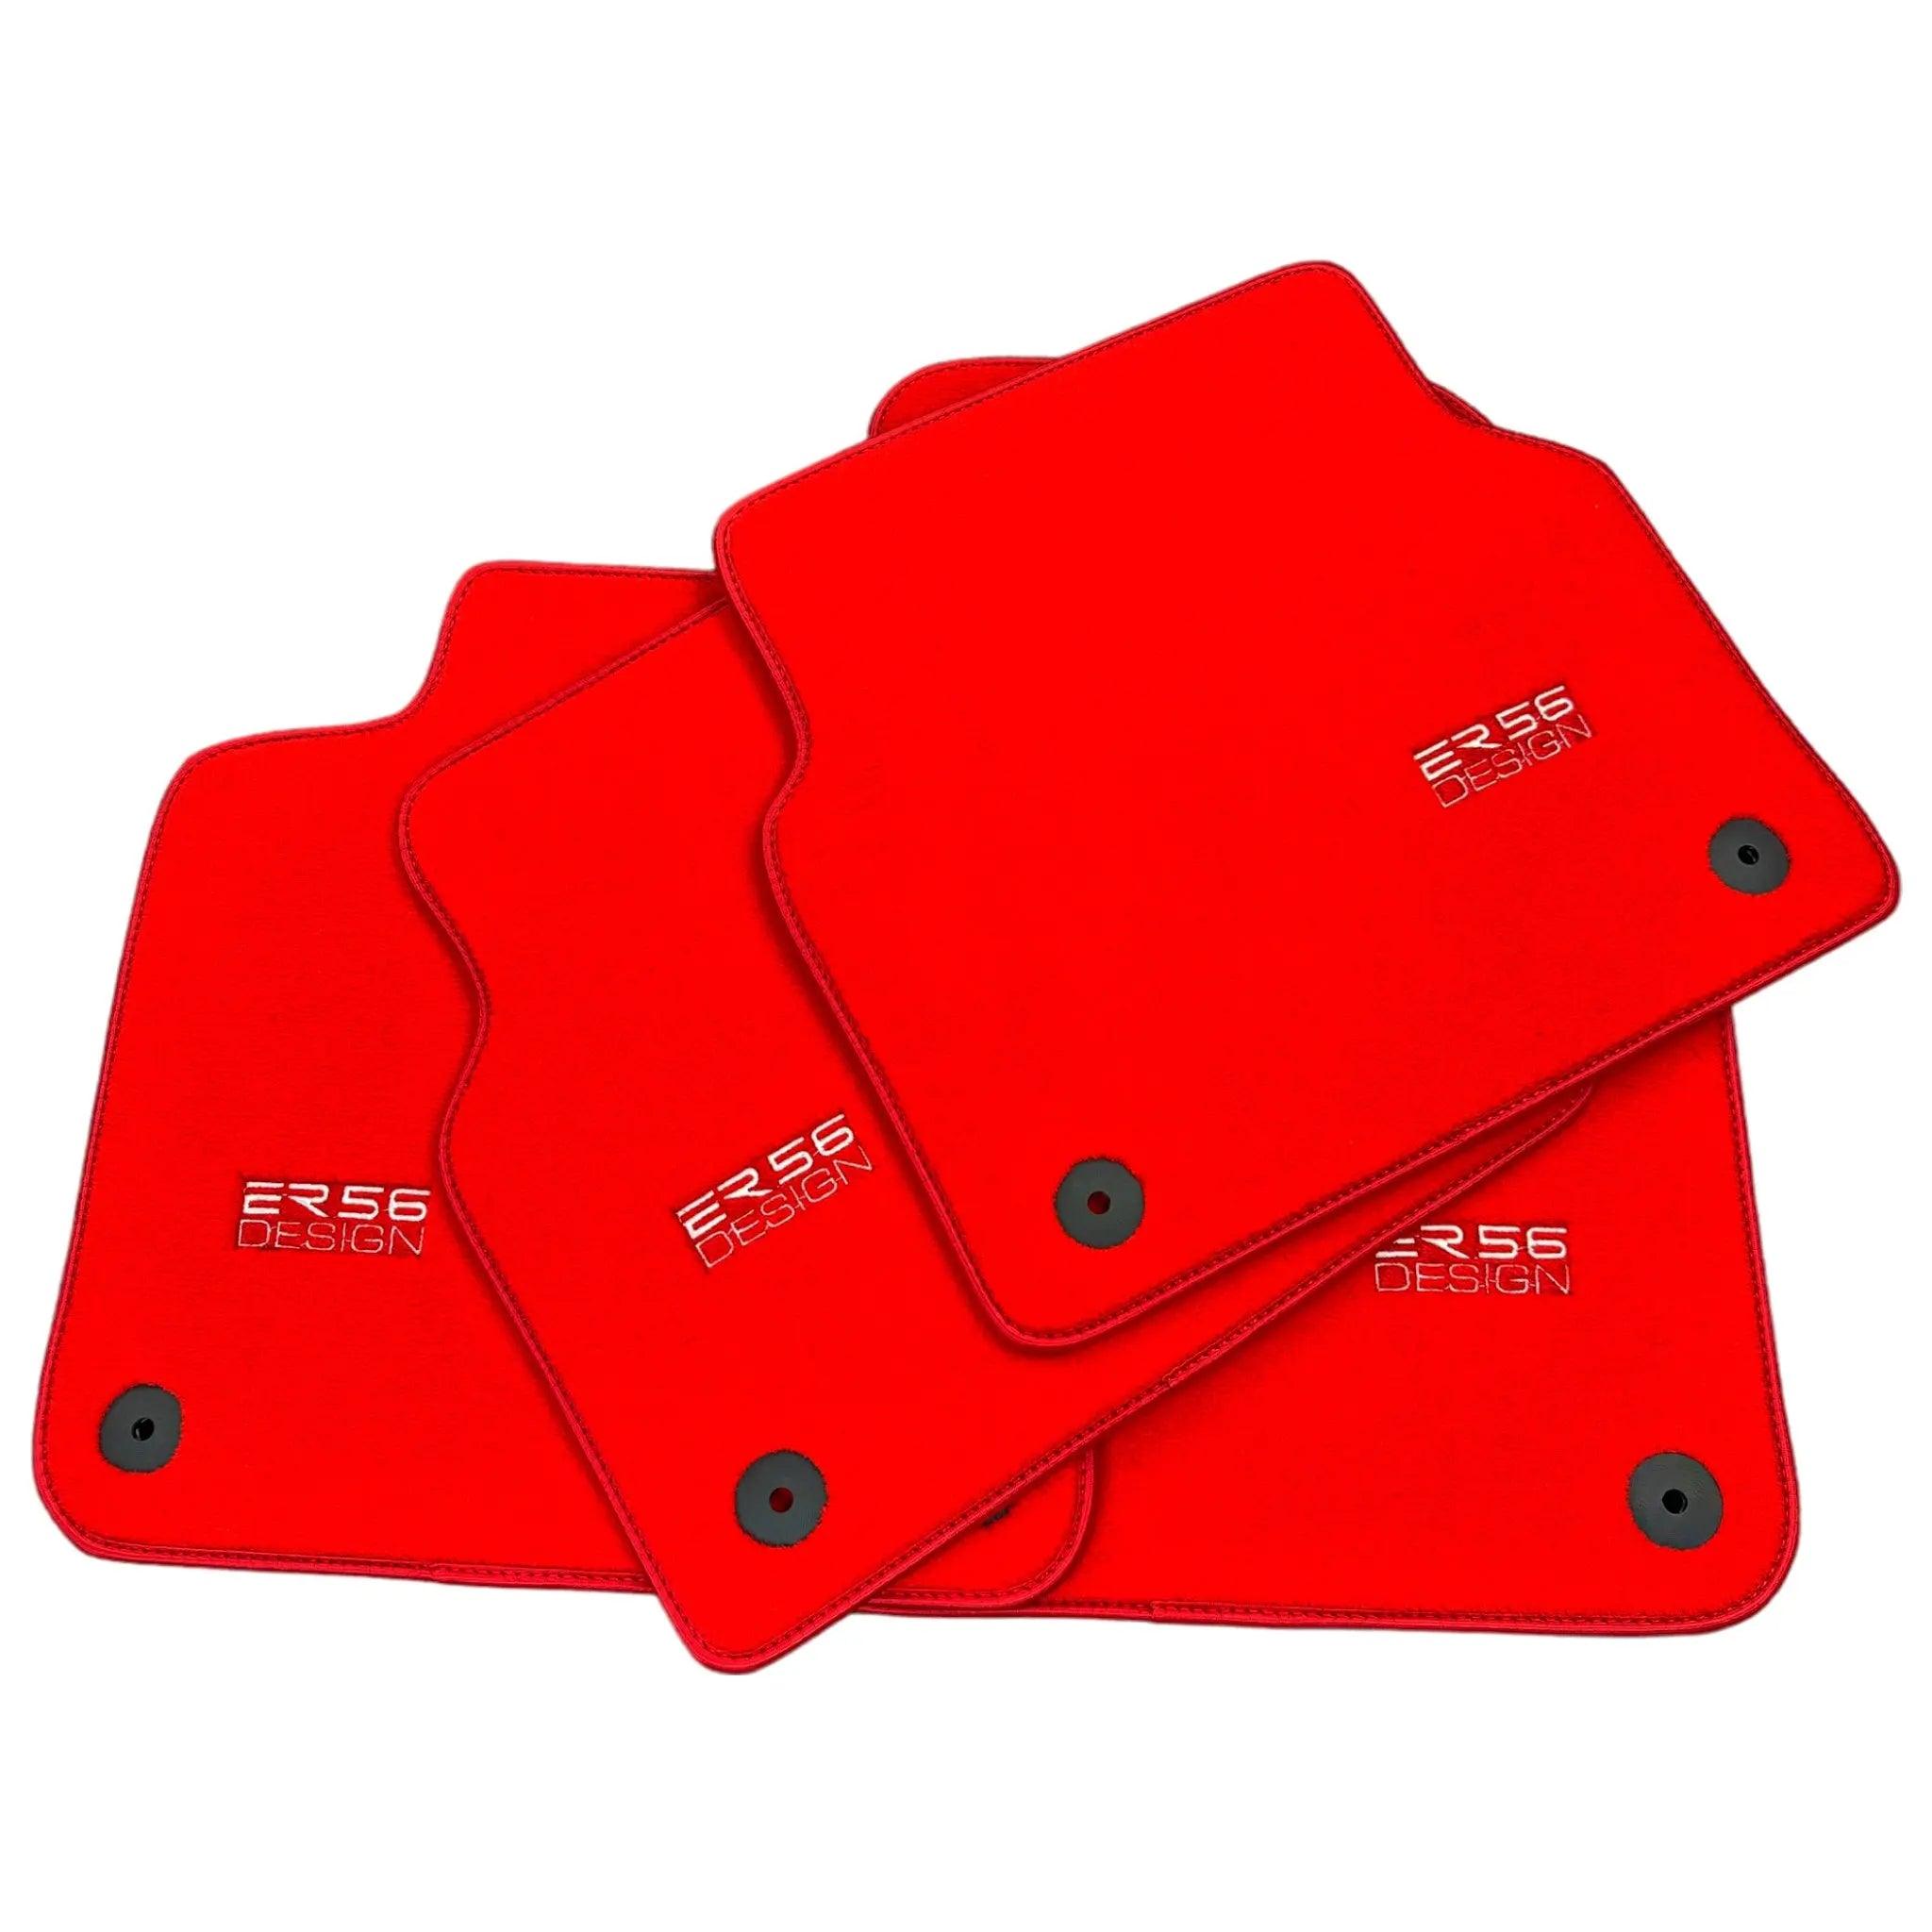 Red Floor Mats for A7 - C8 (2018-2023) | ER56 Design